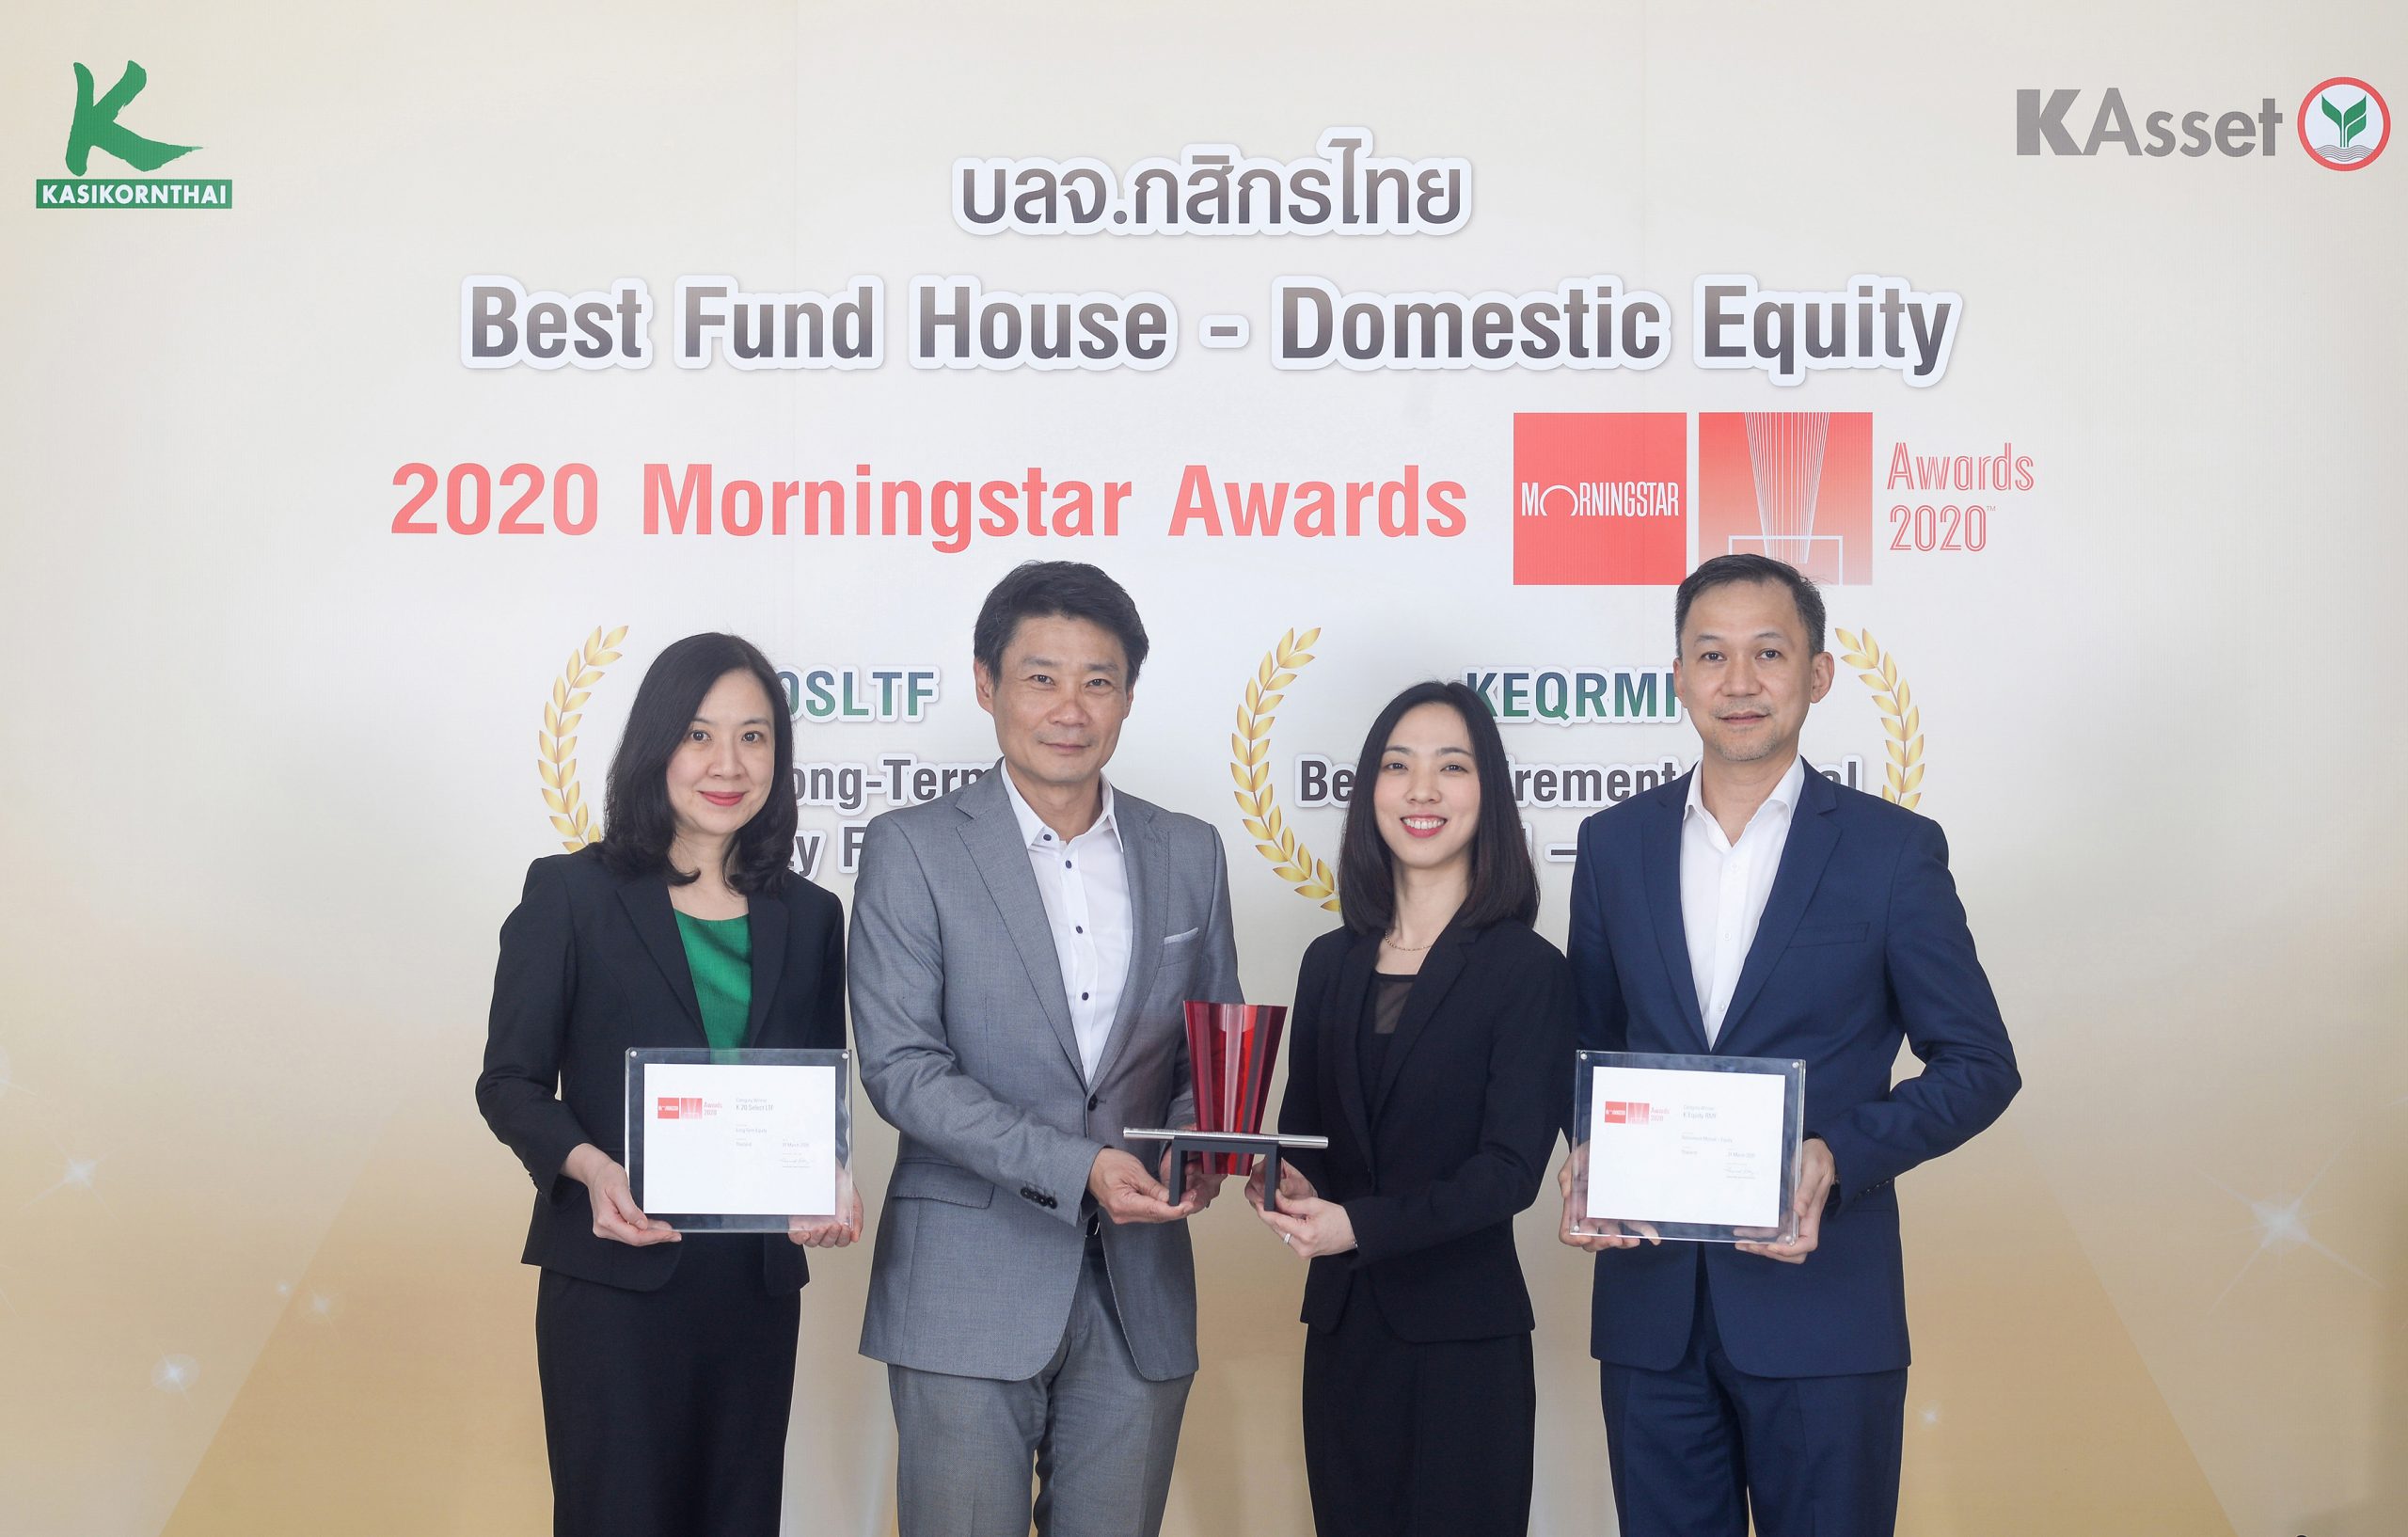 บลจ.กสิกรไทย คว้า 3 รางวัลยอดเยี่ยมจาก Morningstar Awards 2020 การันตีฝีมือบริหารจัดการกองทุนหุ้นไทยและกองทุน LTF/RMF